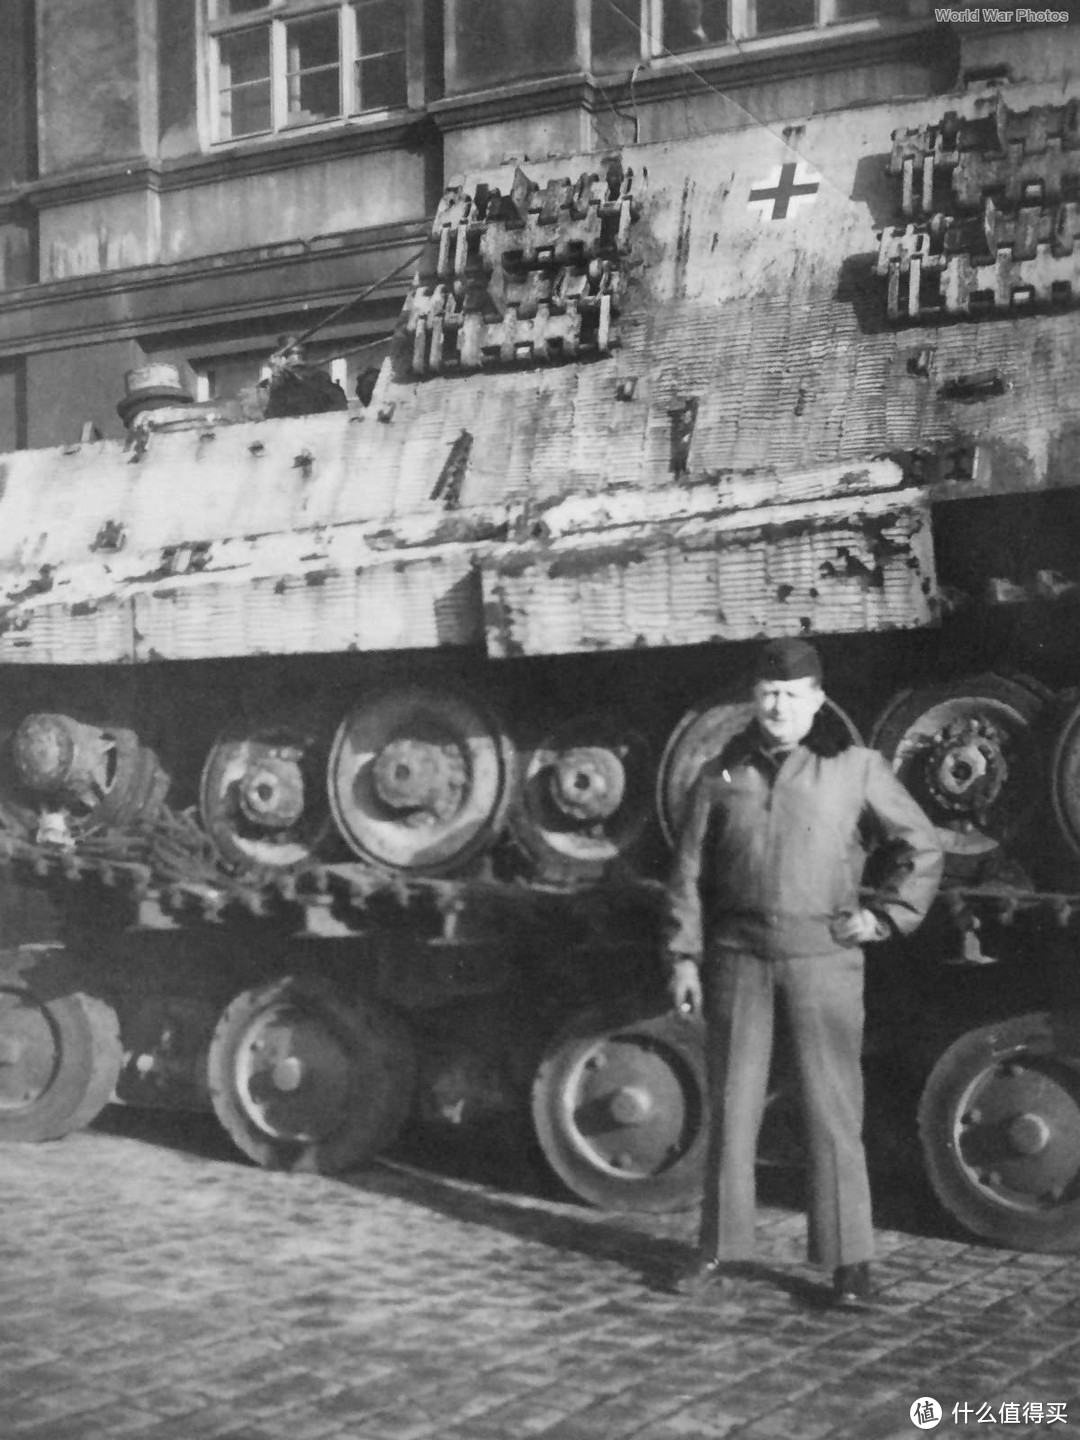 底盘编号为305004的保时捷猎虎，制造于1944年7月，1945年被美军缴获森讷拉格(Sennelager)训练场，后转交于英军，拖至豪斯特贝克(Haustenbeck)用于测试。